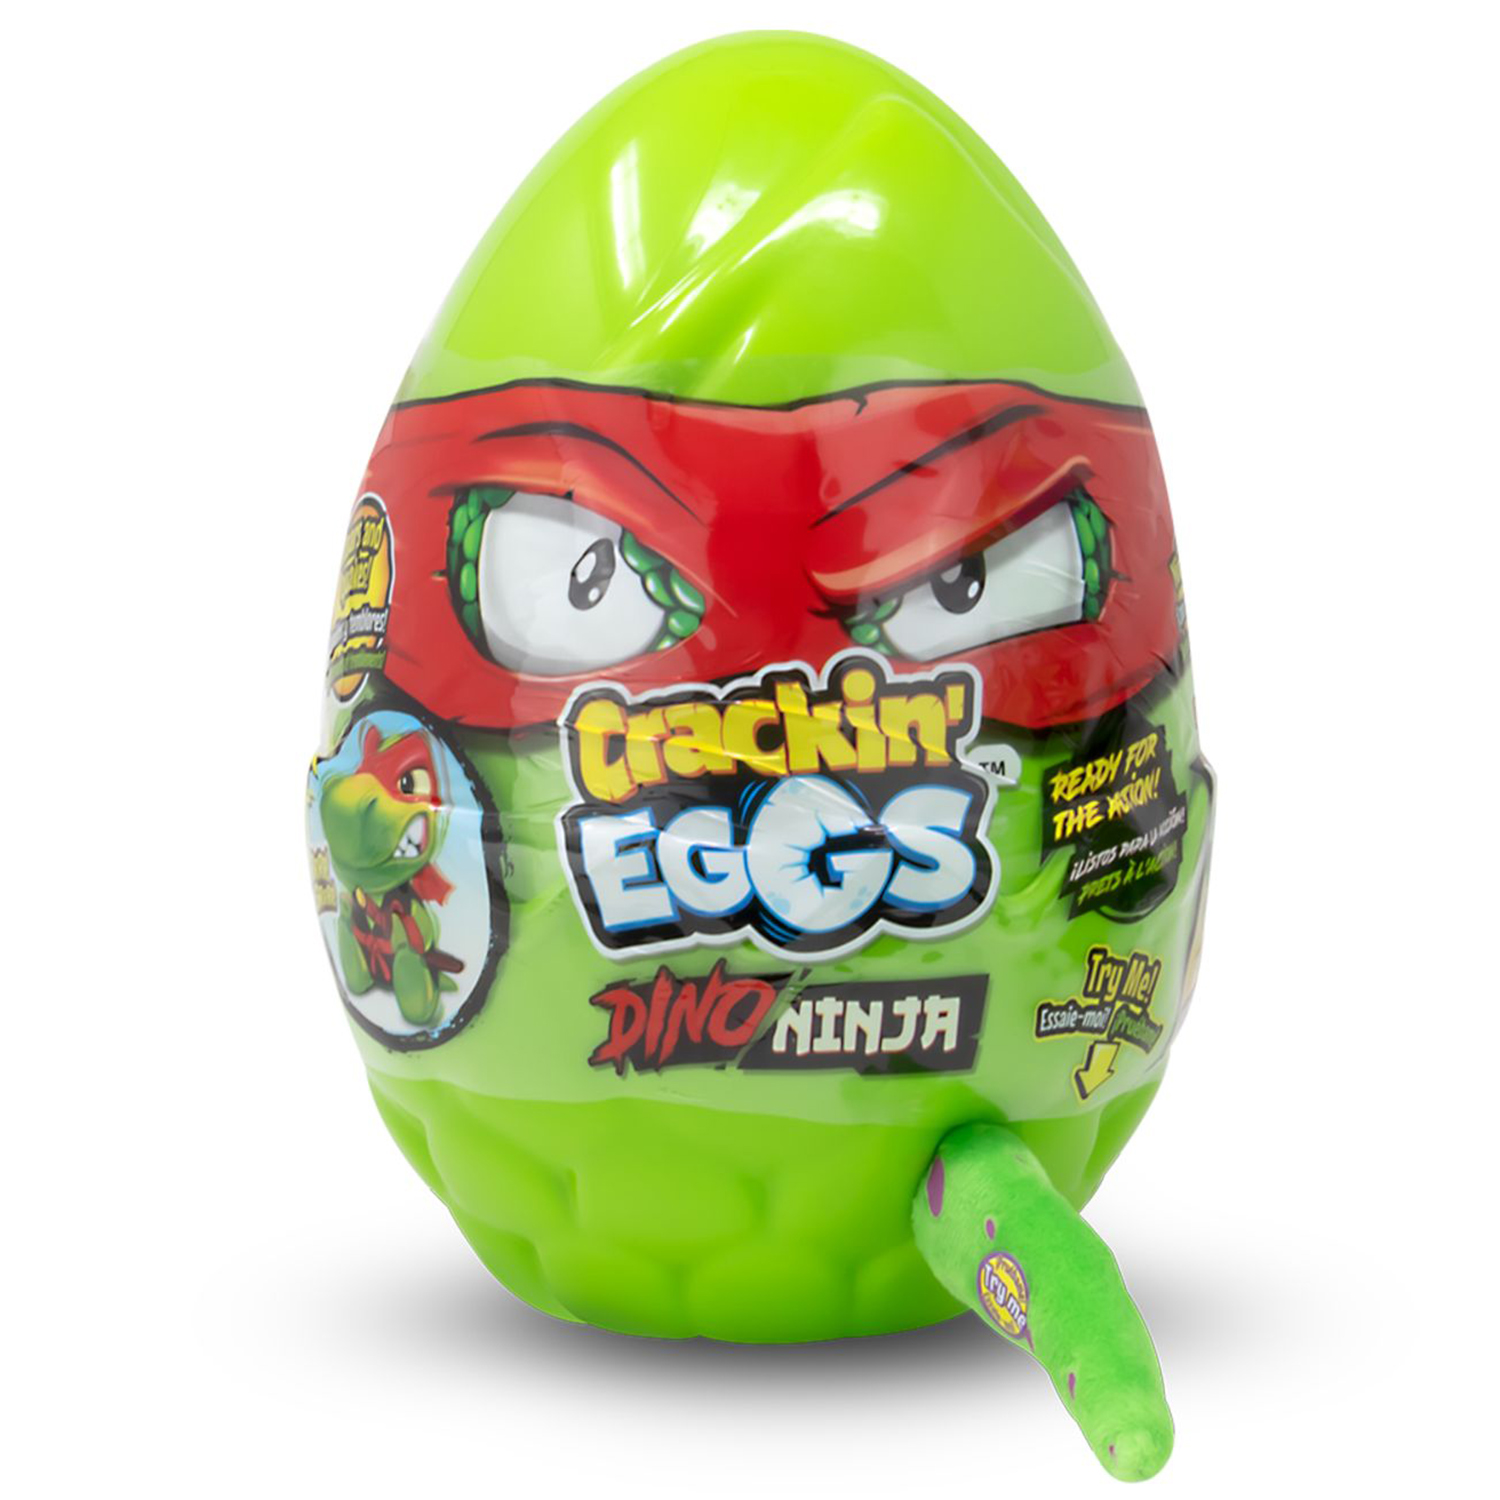 Мягкая игрушка Crackin' Eggs Динозавр зеленый в яйце, серия Ниндзя, 22 см мягкая игрушка crackin eggs динозавр оранжевый в яйце серия лава 22 см